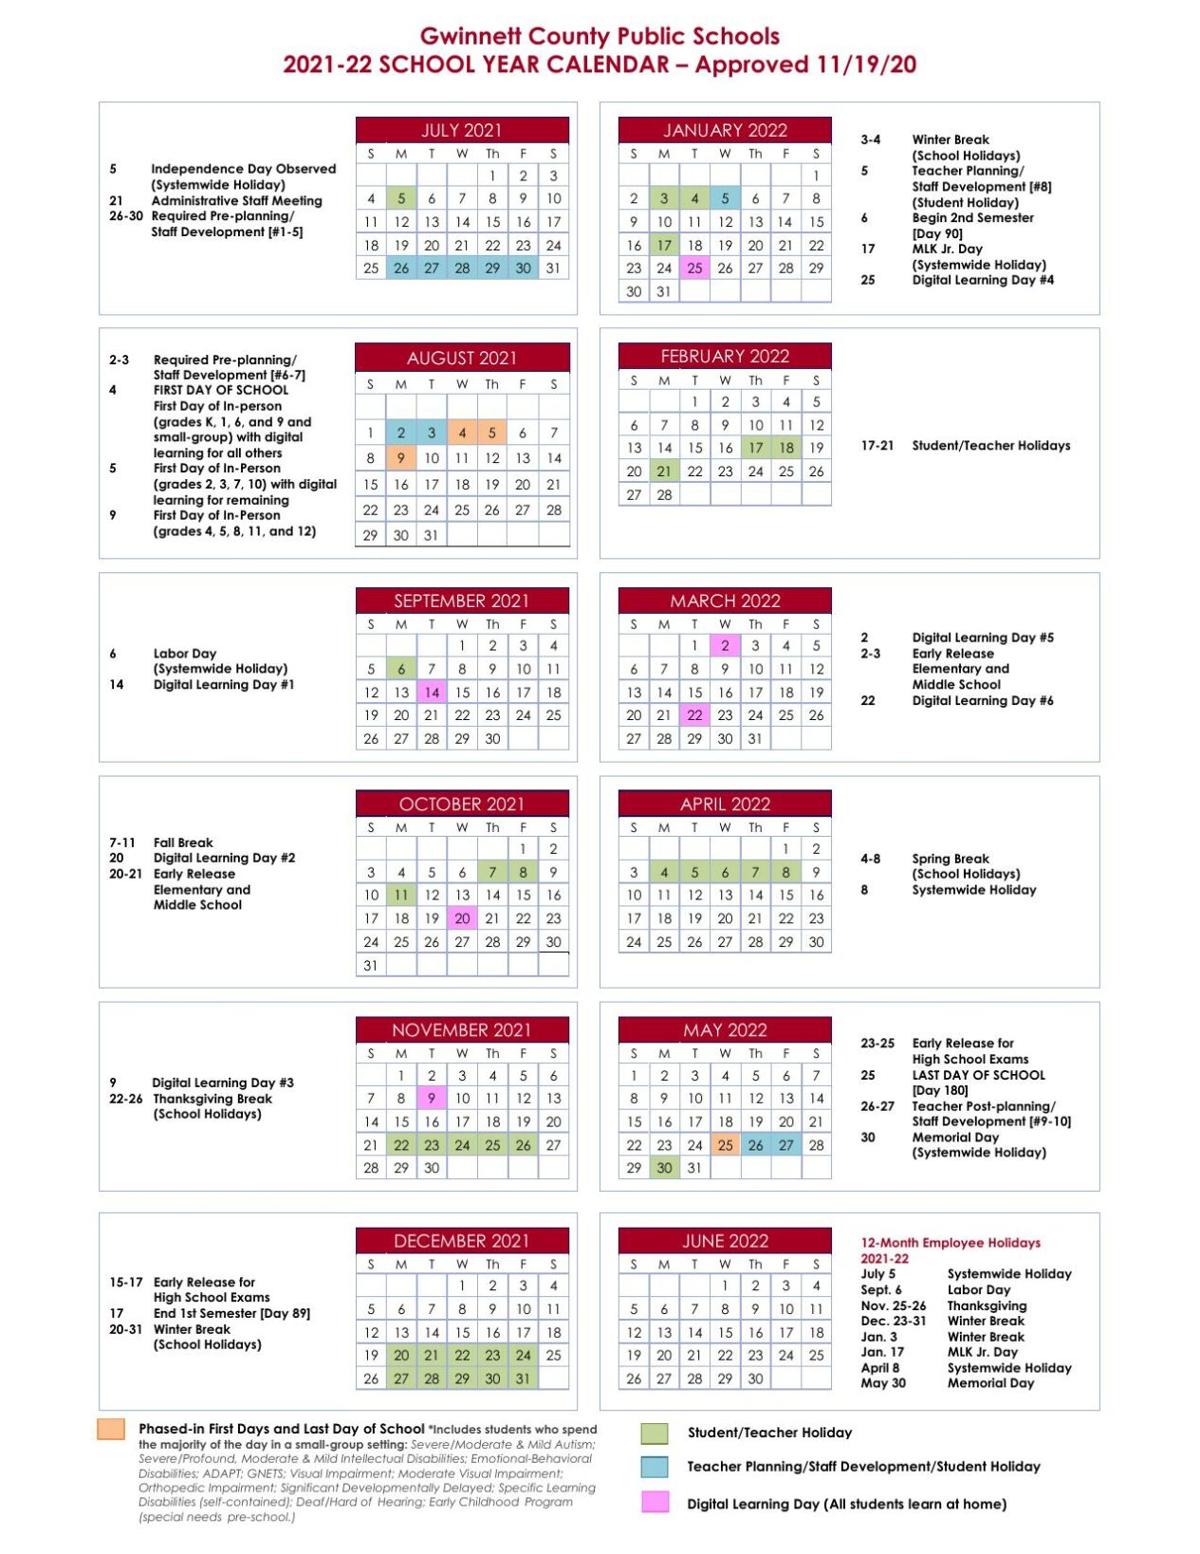 Texas Tech Calendar 2022 23 Gwinnett County Public Schools' 2021-2022 School Year Calendar | |  Gwinnettdailypost.com